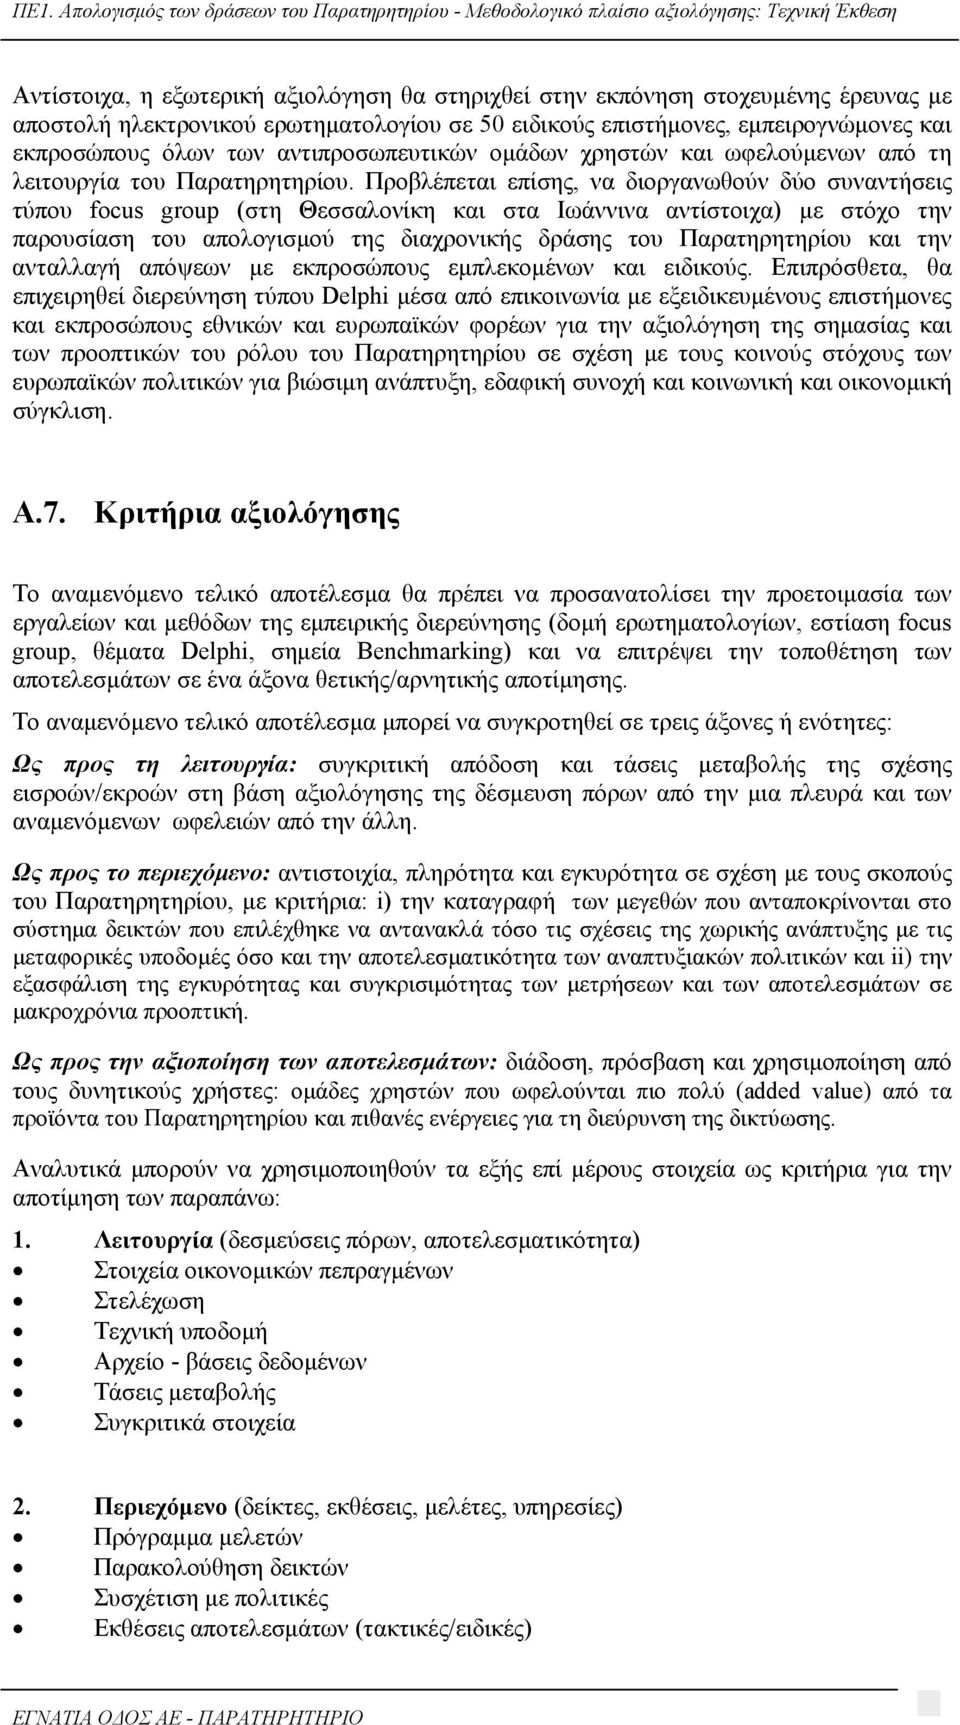 Προβλέπεται επίσης, να διοργανωθούν δύο συναντήσεις τύπου focus group (στη Θεσσαλονίκη και στα Ιωάννινα αντίστοιχα) με στόχο την παρουσίαση του απολογισμού της διαχρονικής δράσης του Παρατηρητηρίου